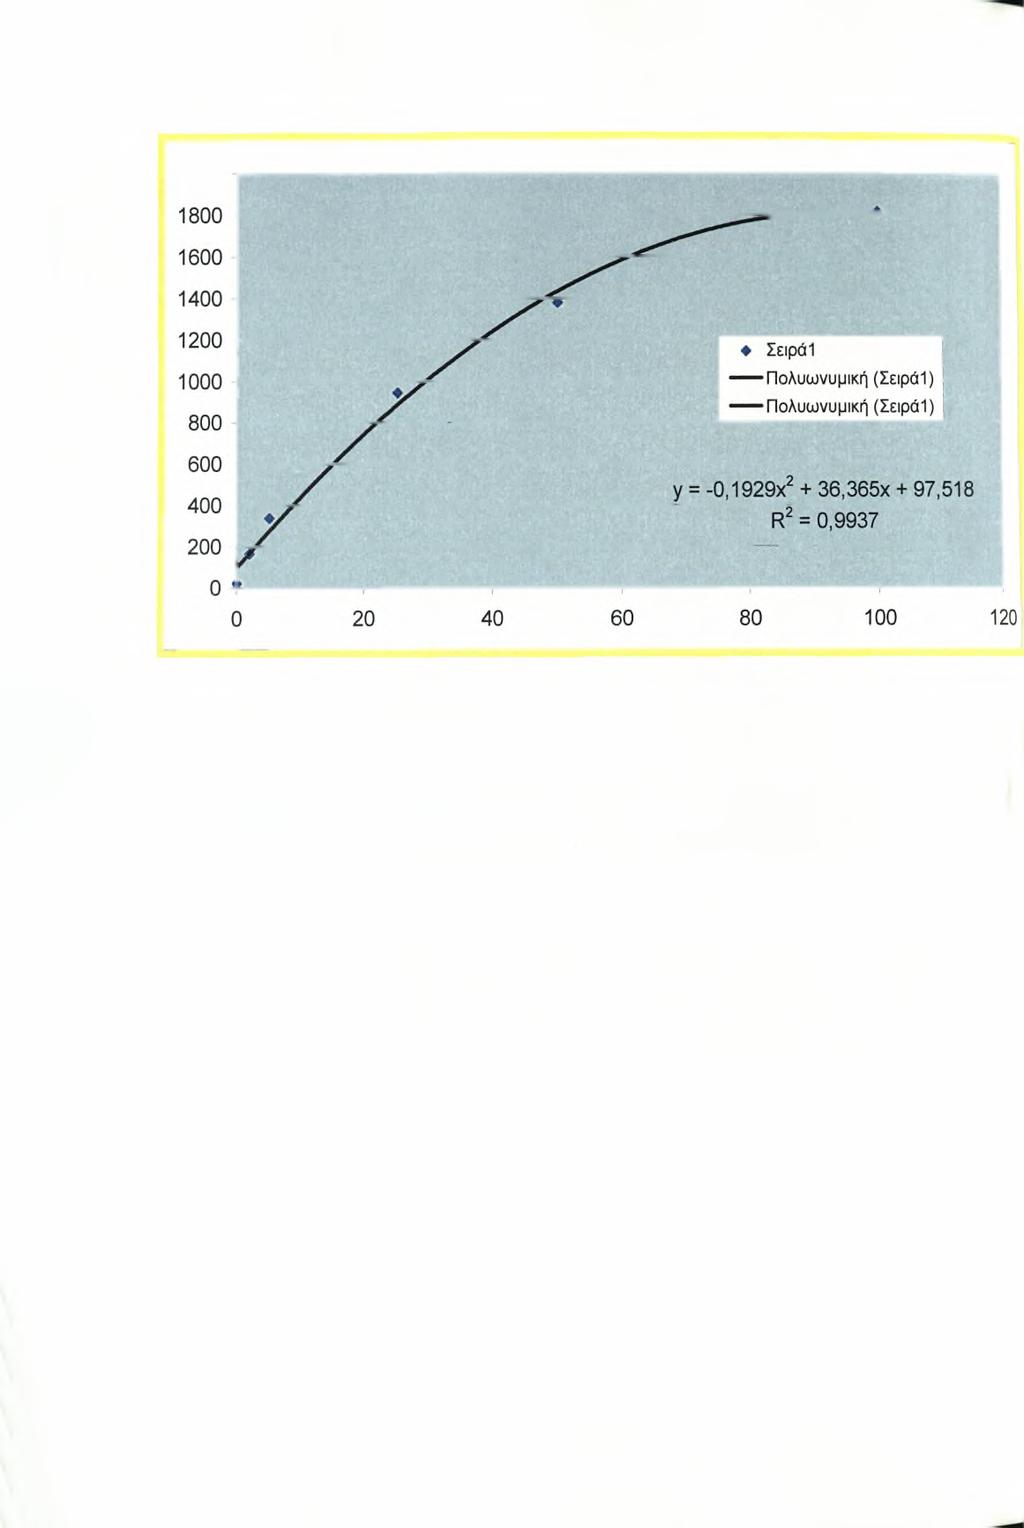 2000 Σχήμα 2: Πρότυπη καμπύλη αναφοράς διαφορετικού πειράματος και εξίσωση